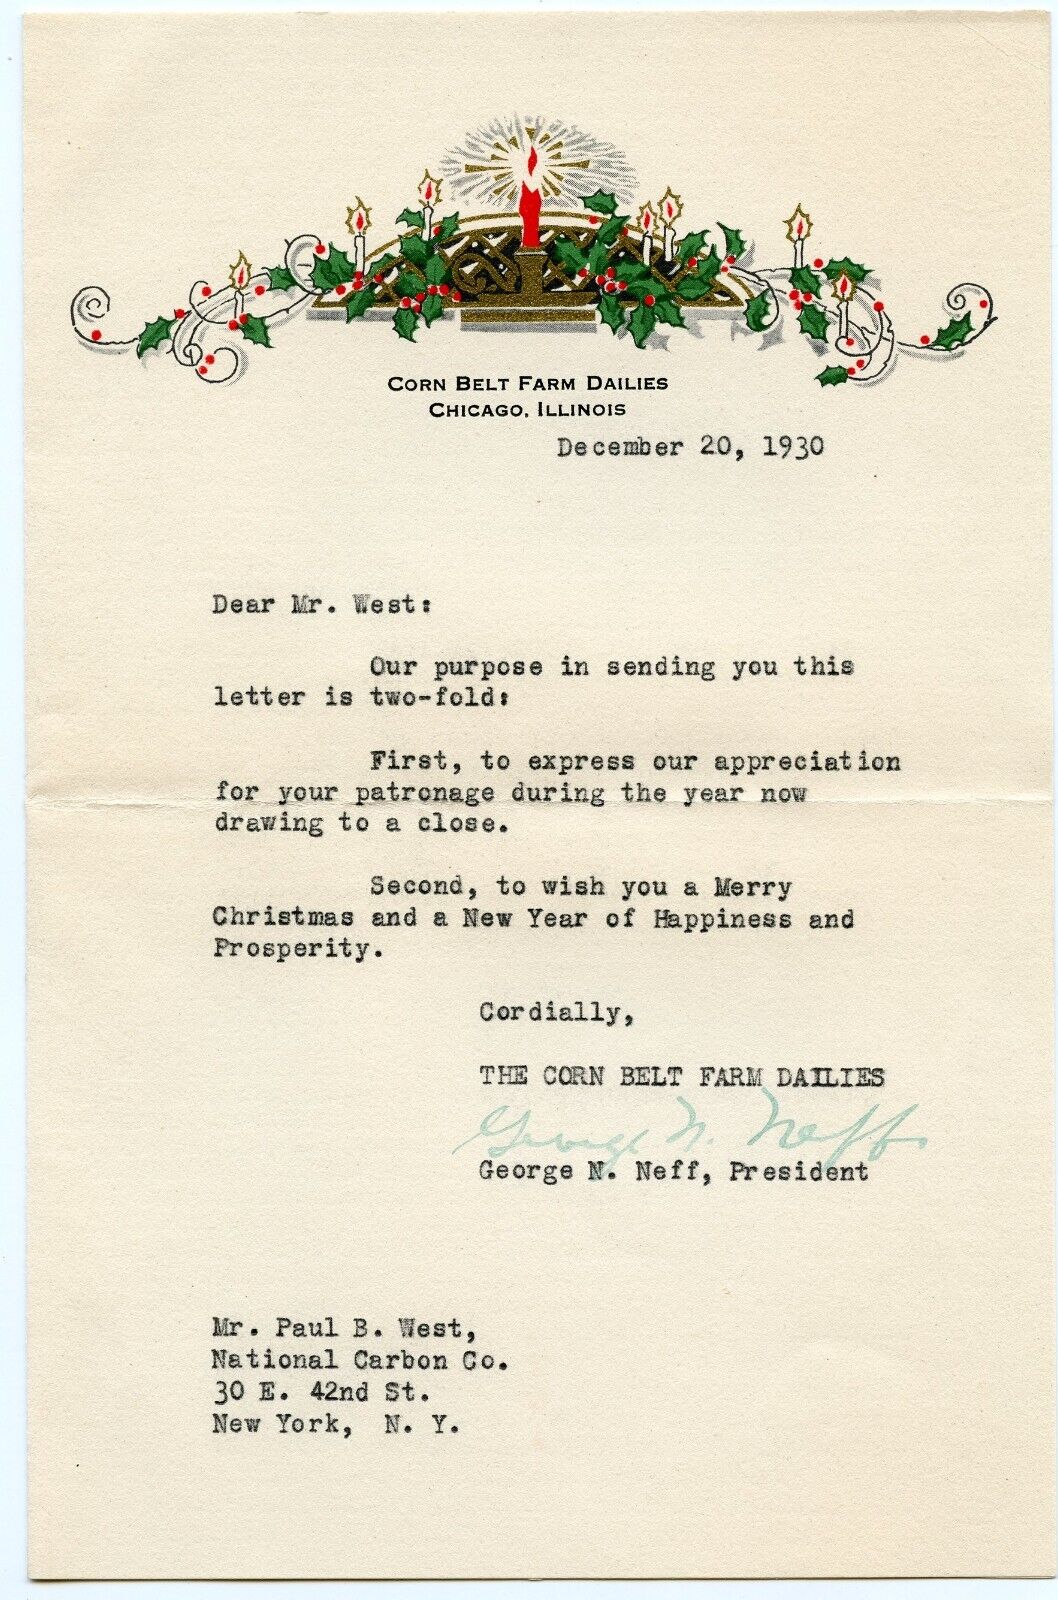 1930 Christmas Letter Corn Belt Farm Dailies Chicago National Carbon Co.